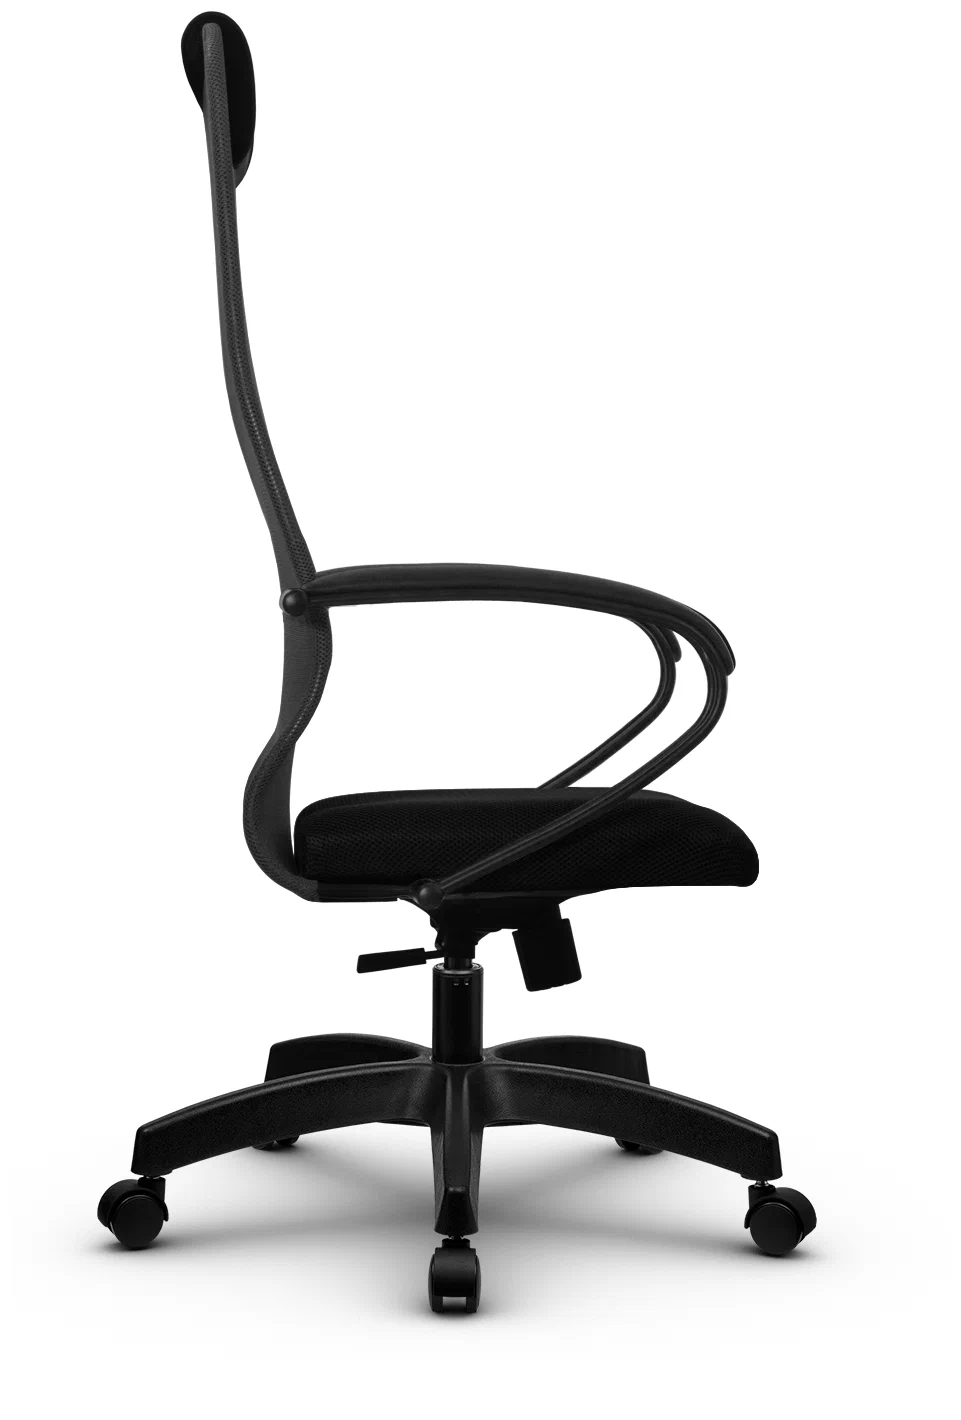 Кресло офисное МЕТТА 11/100 черный (z308963646)